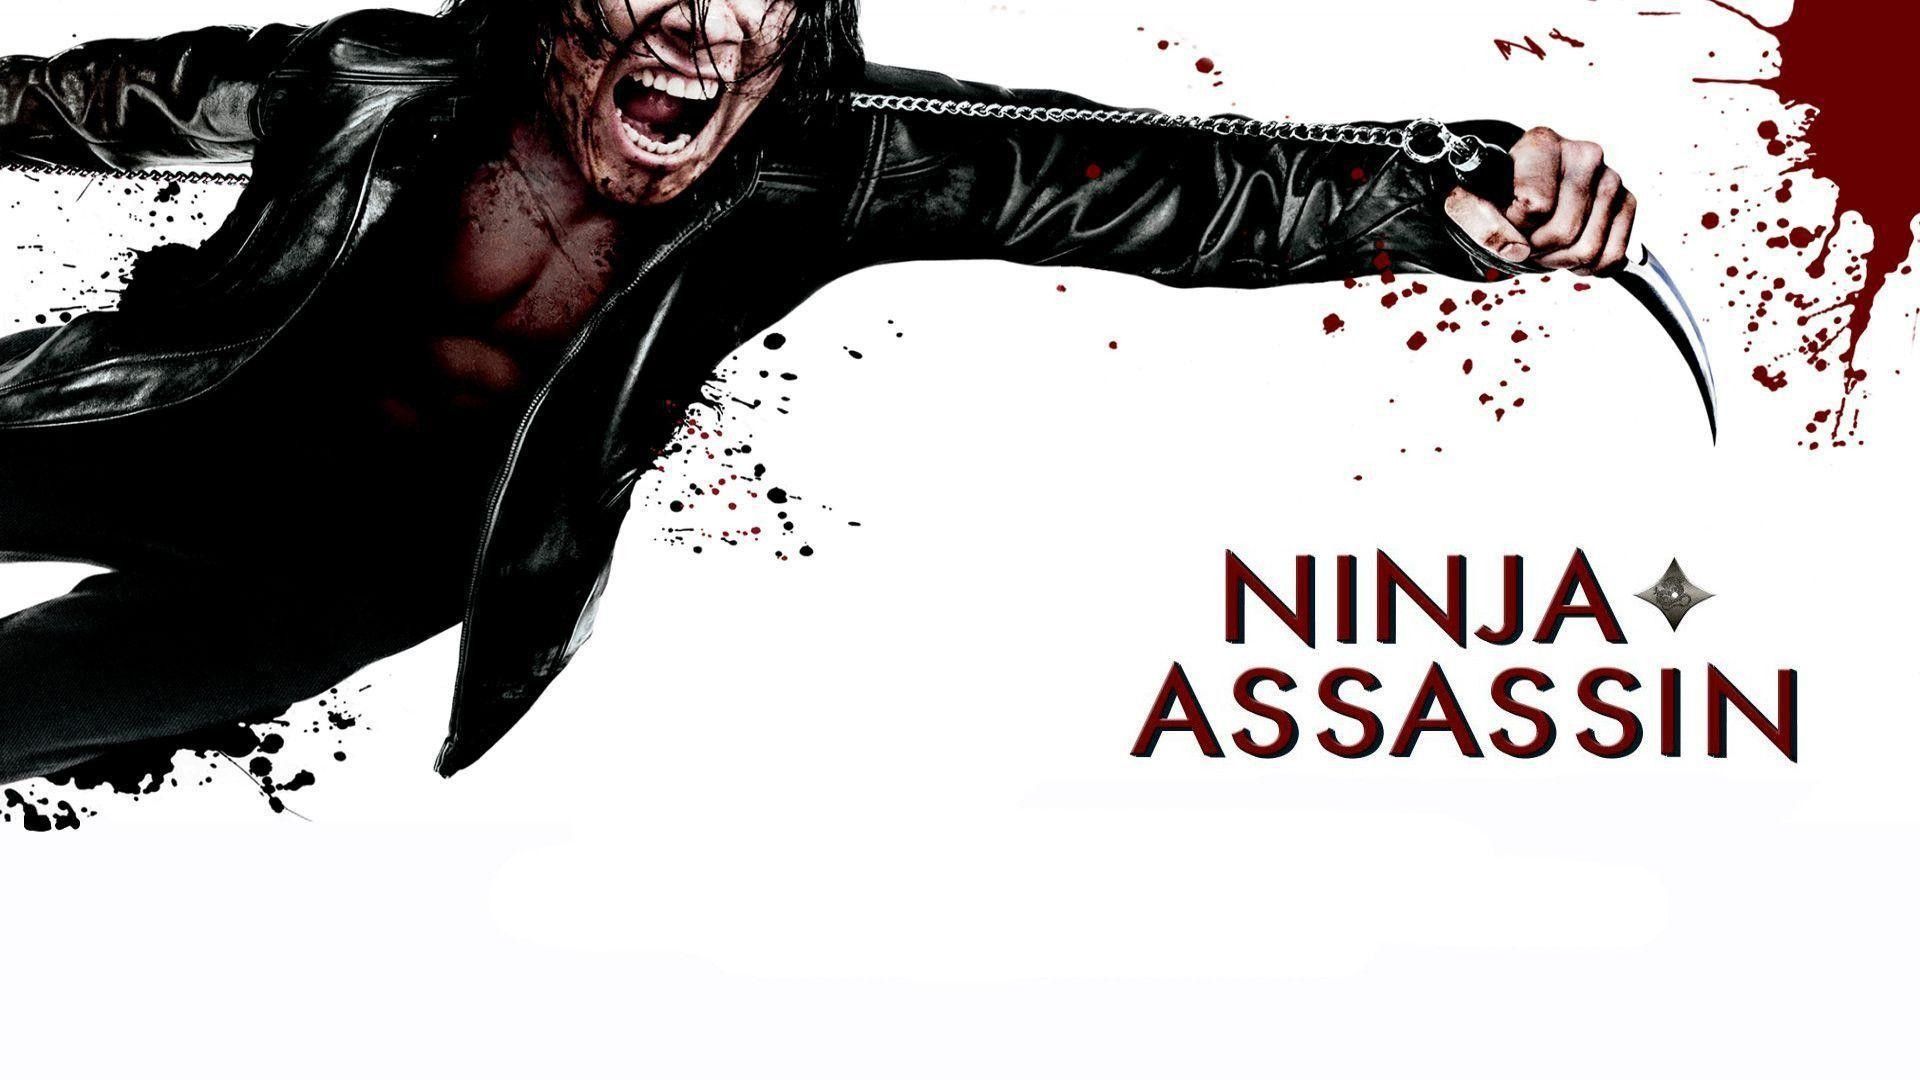 Ninja Assassin Movie Quotes. QuotesGram